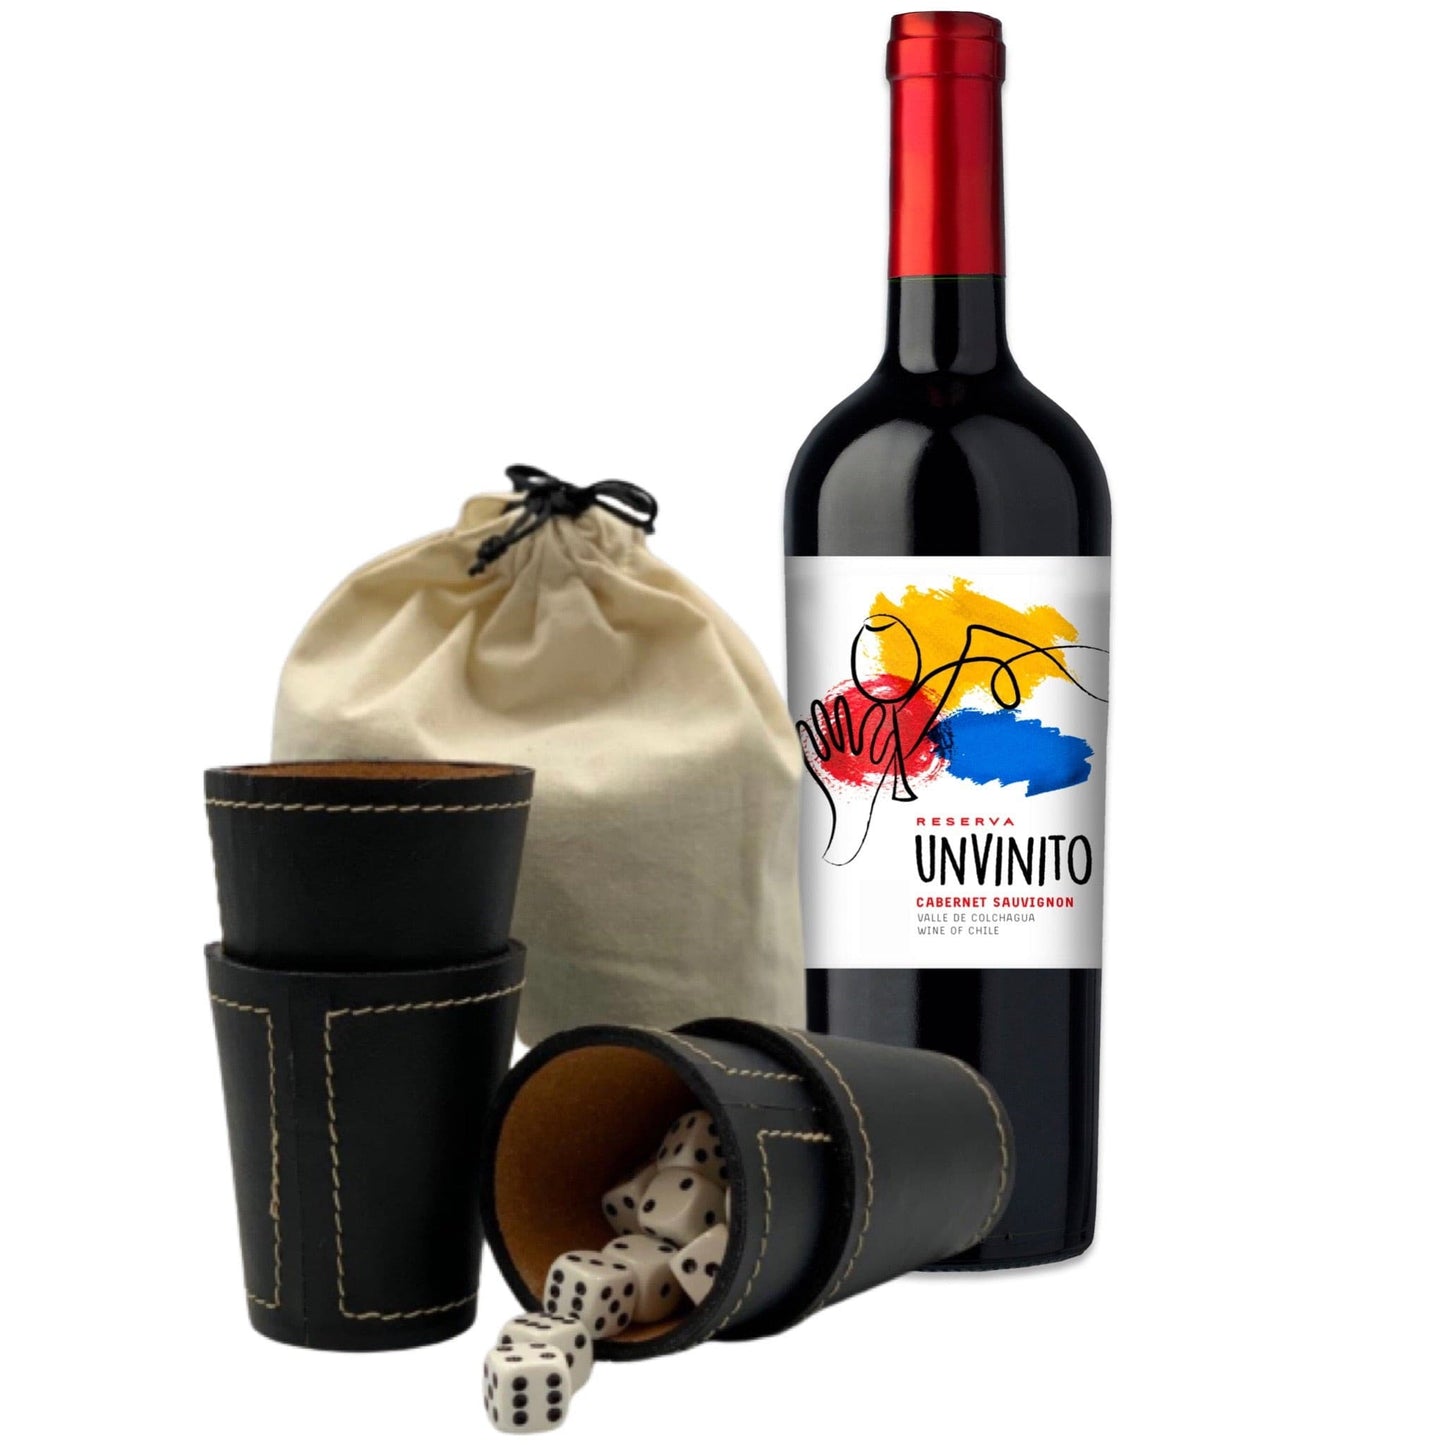 Pack-de-Vino-para-regalo-regalos-juego-de-cachos-con-vino--vino-tinto-unvinito-vinito-vino-de-chile-valle-de-colchagua-Cabernet-Sauvignon-chileno-obco-vino-de-autor-vinos-premium-mejores-vinos